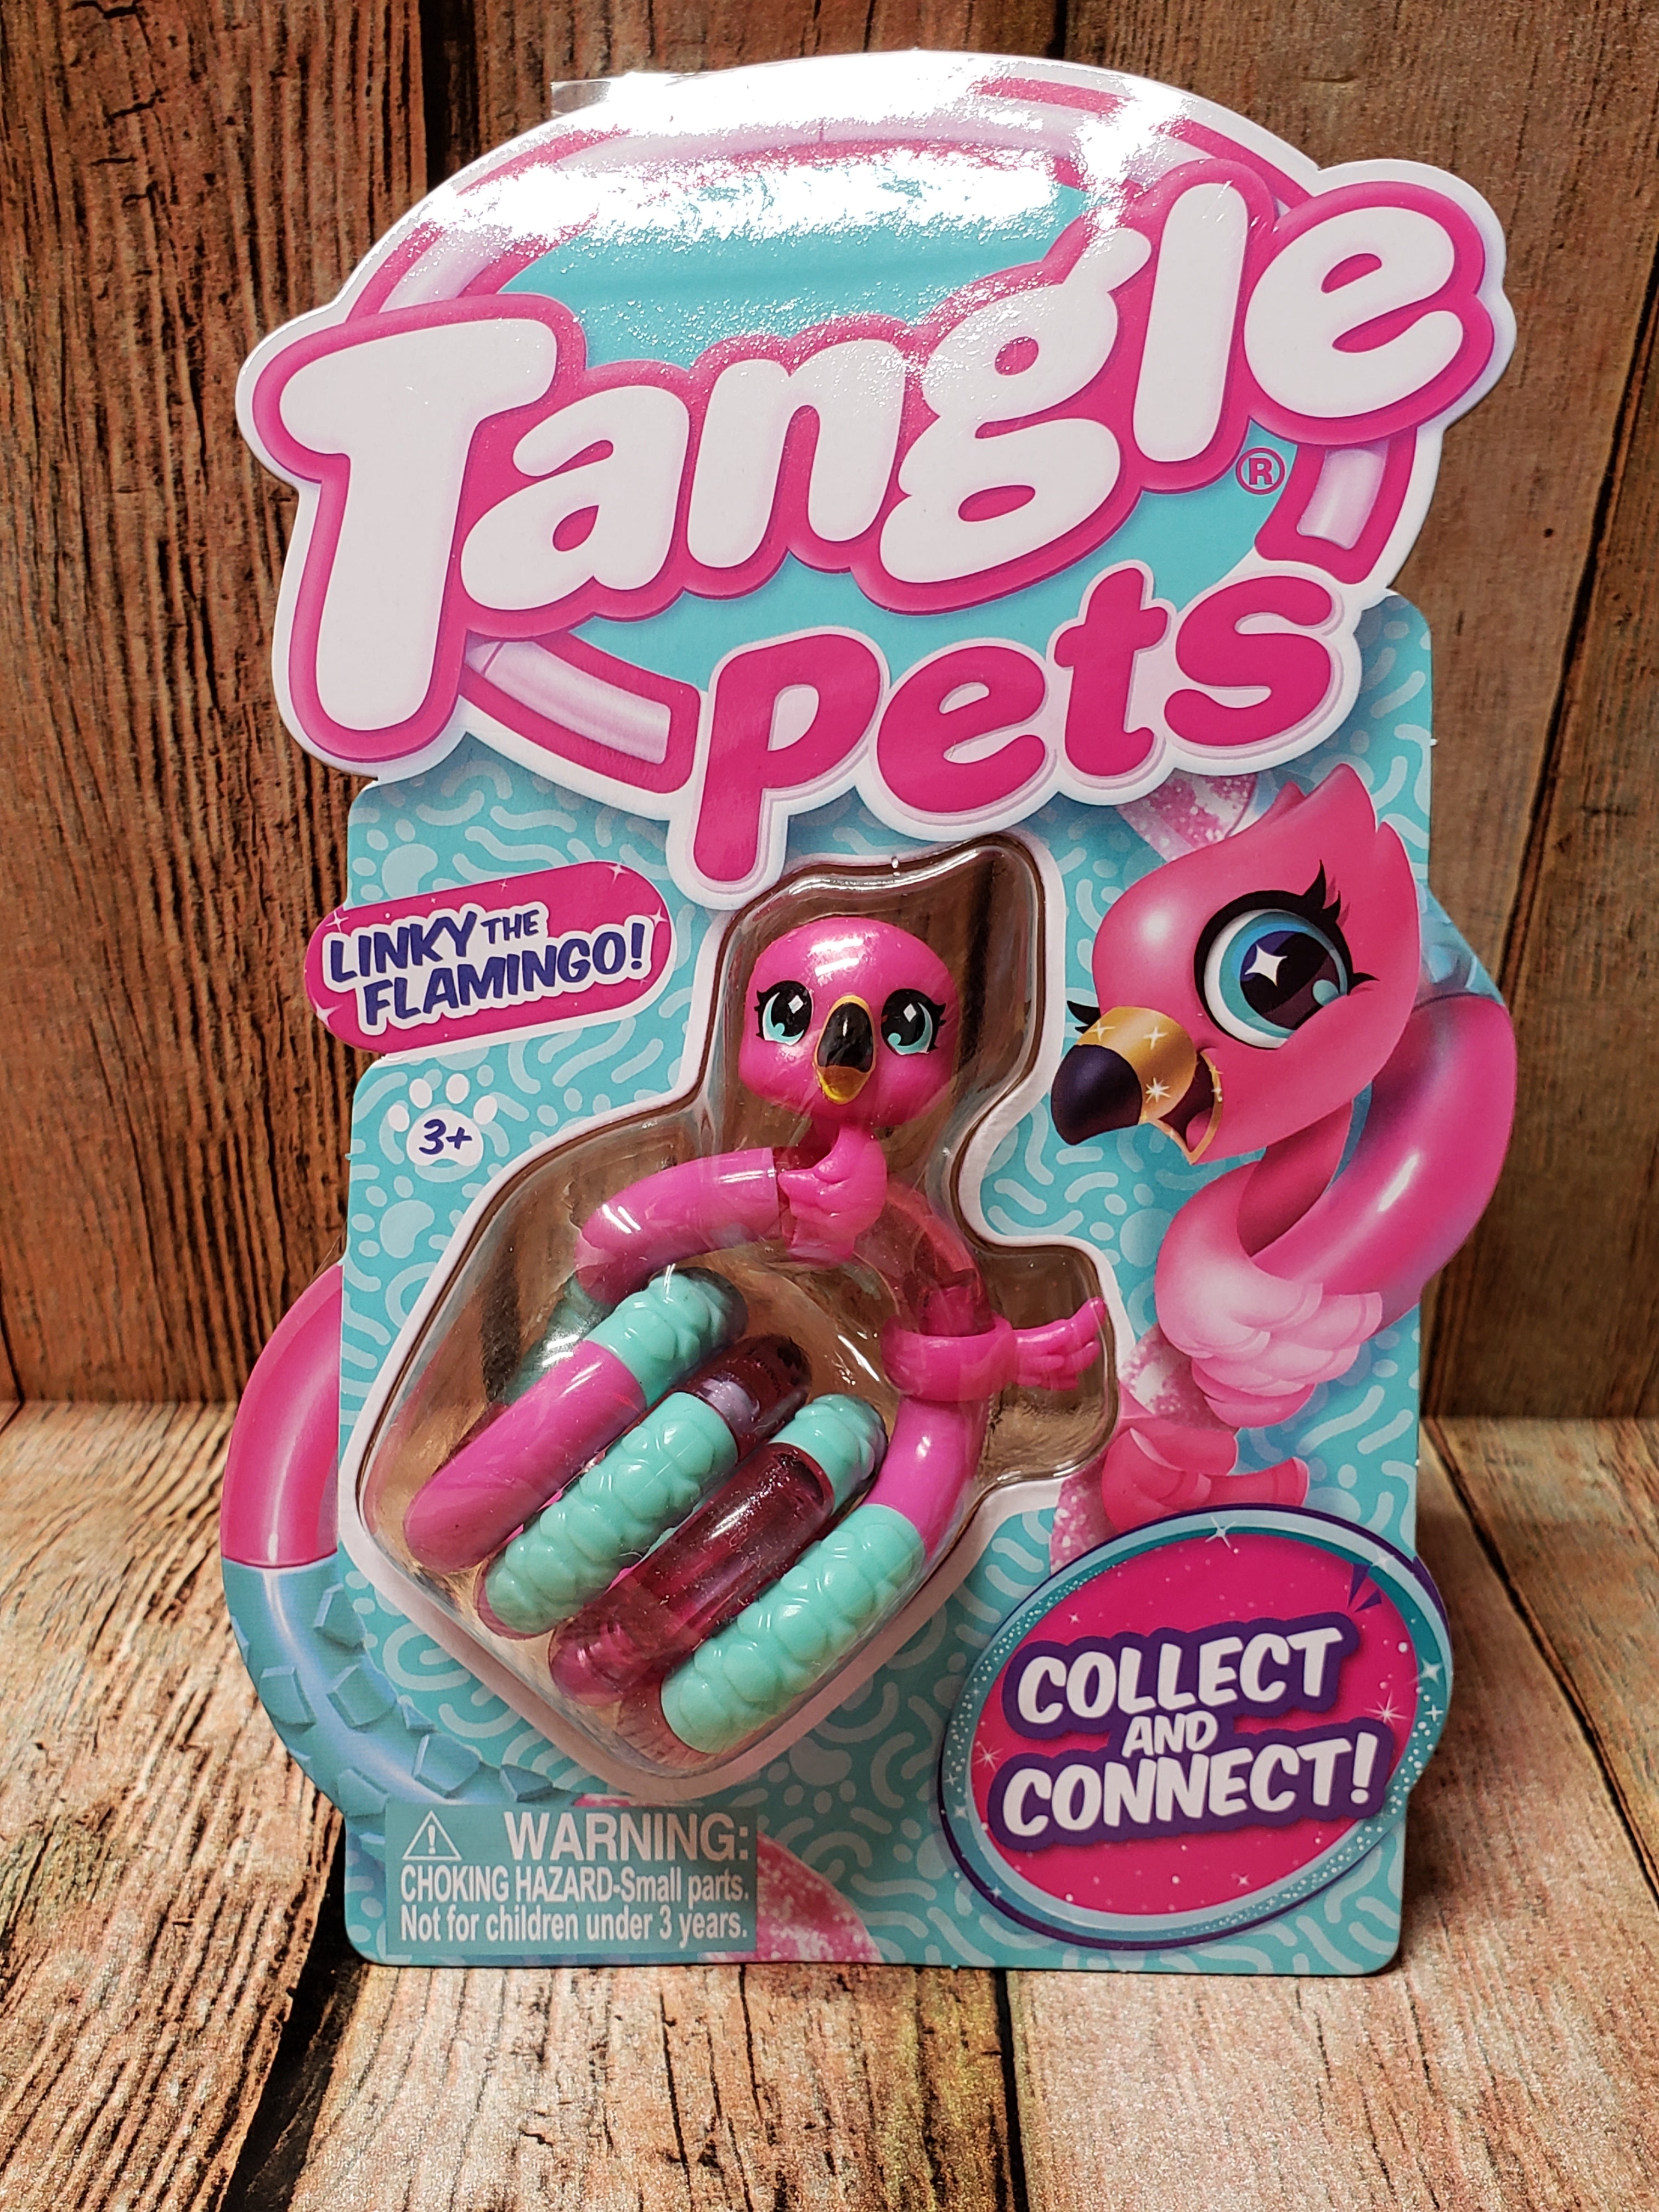 Tangle pets